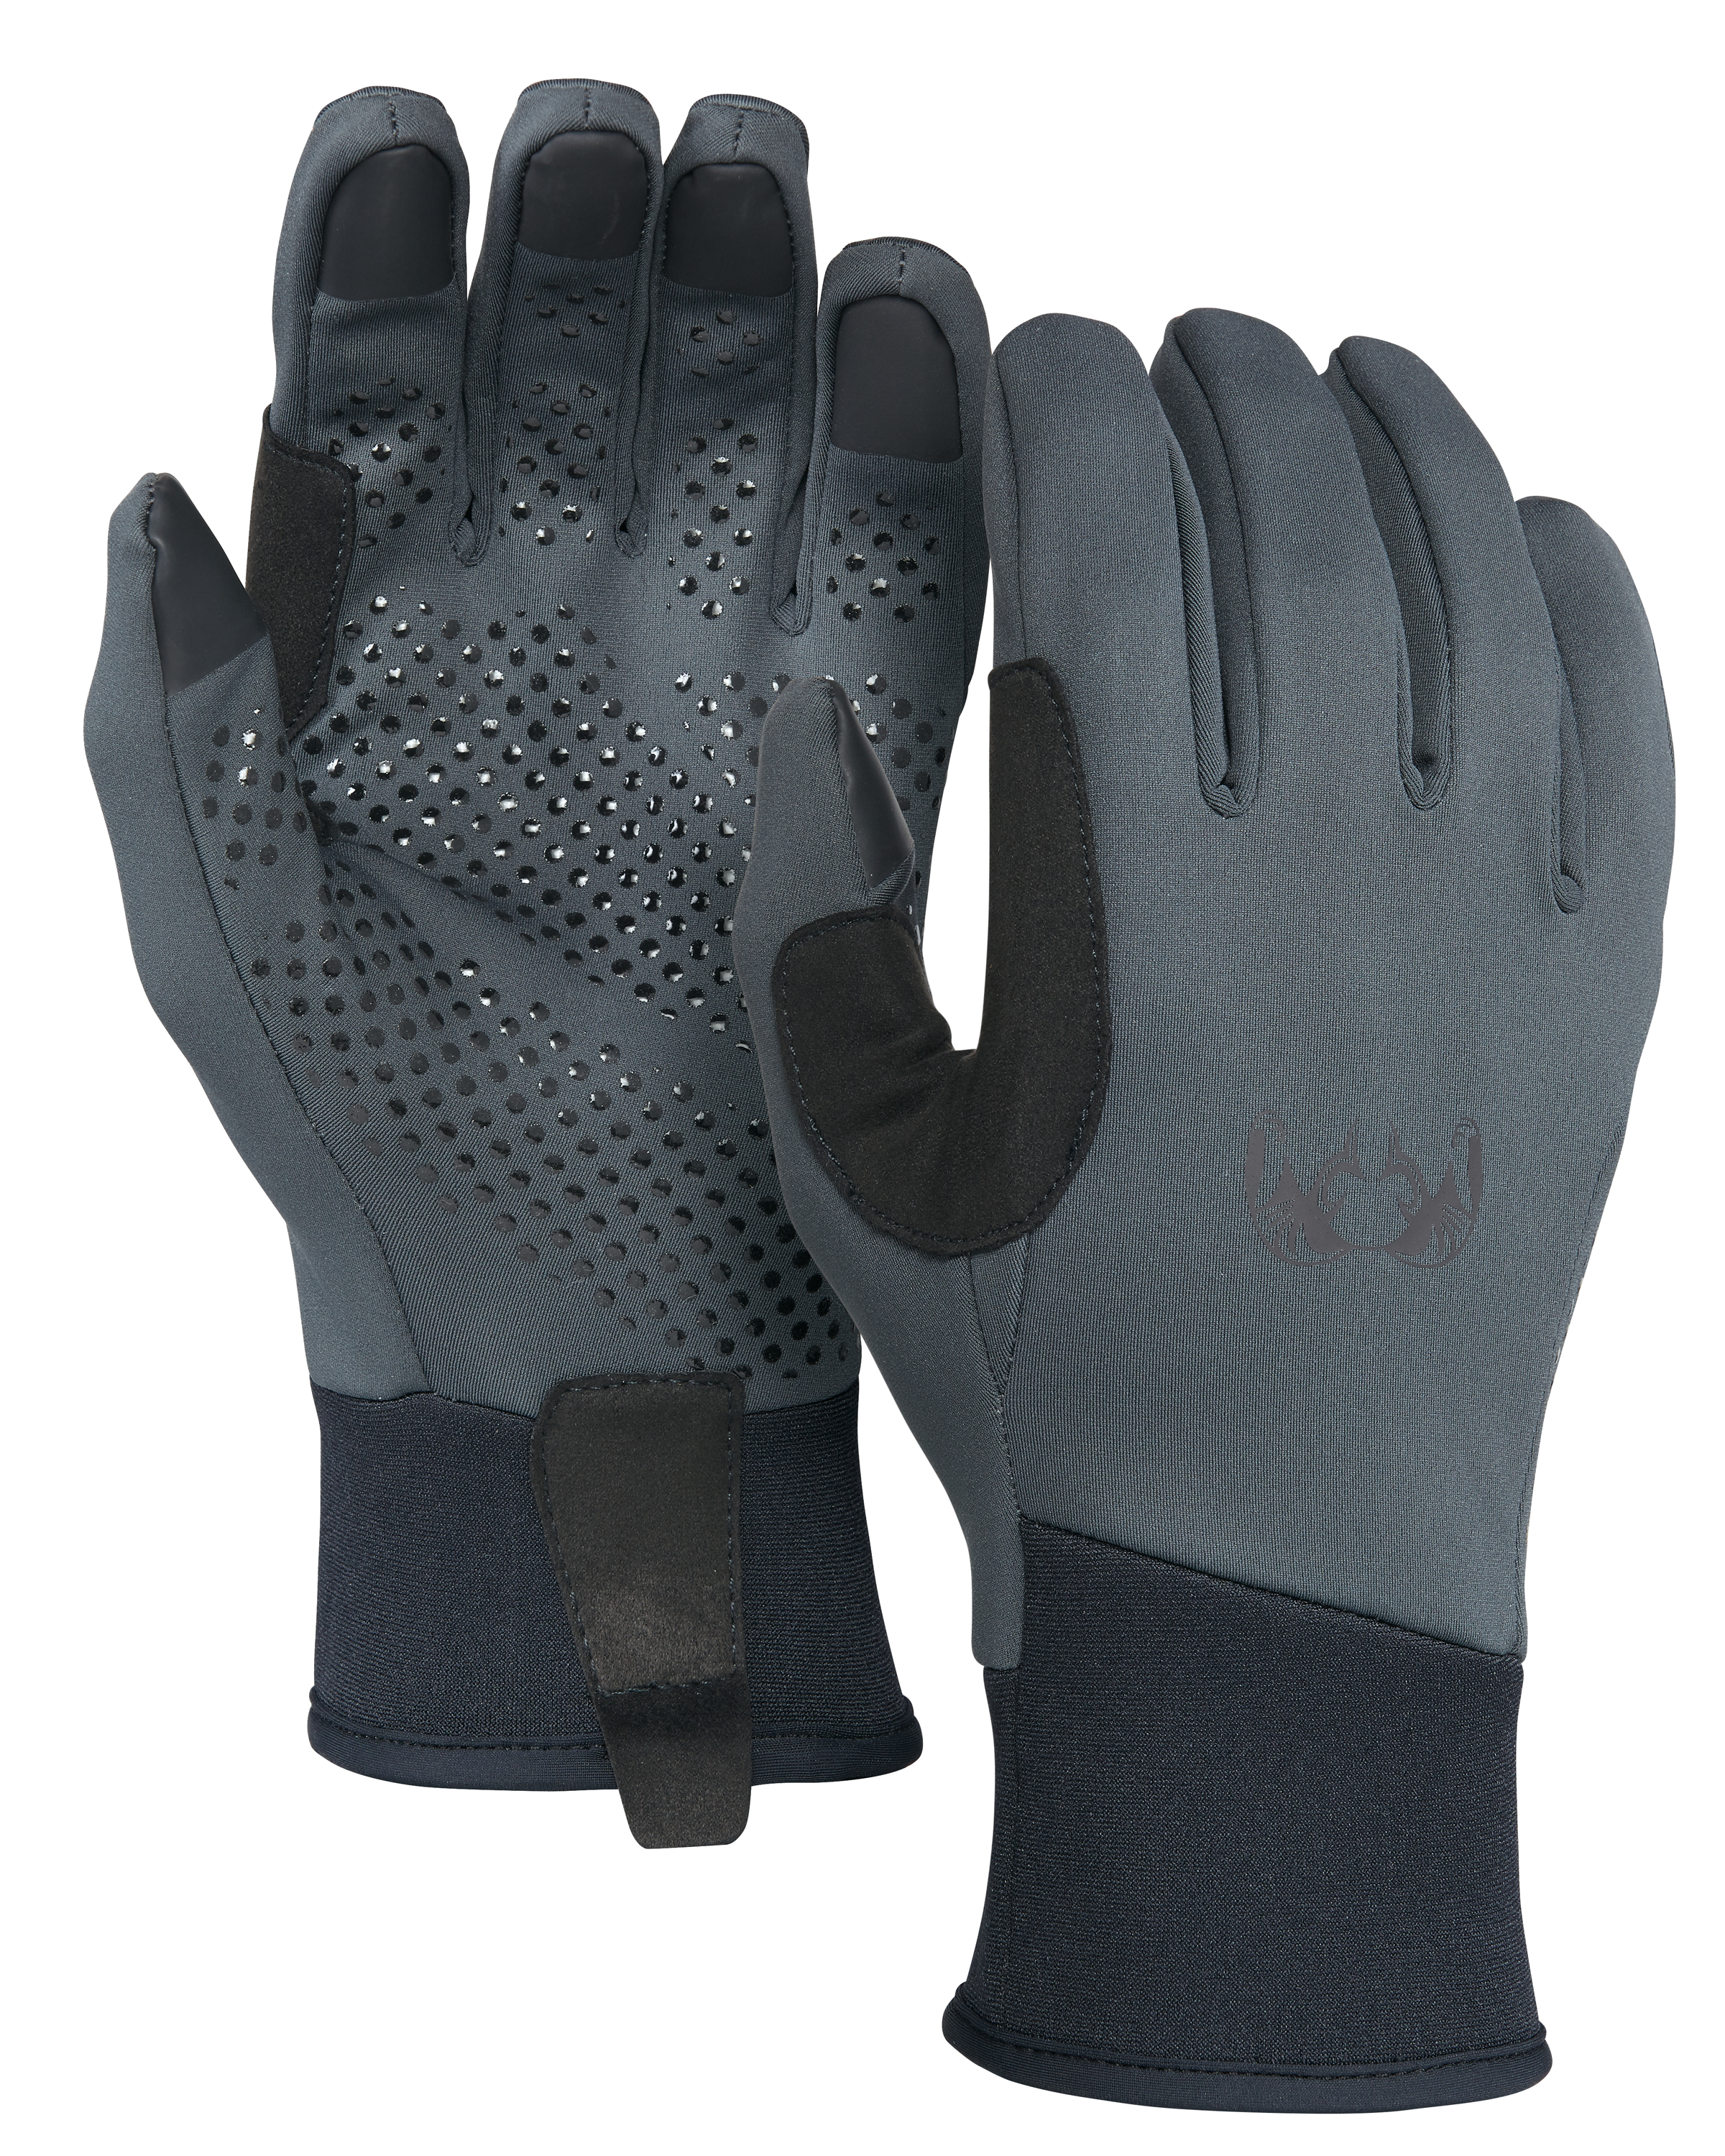 KUIU Axis Hunting Glove in Gunmetal | Size XL